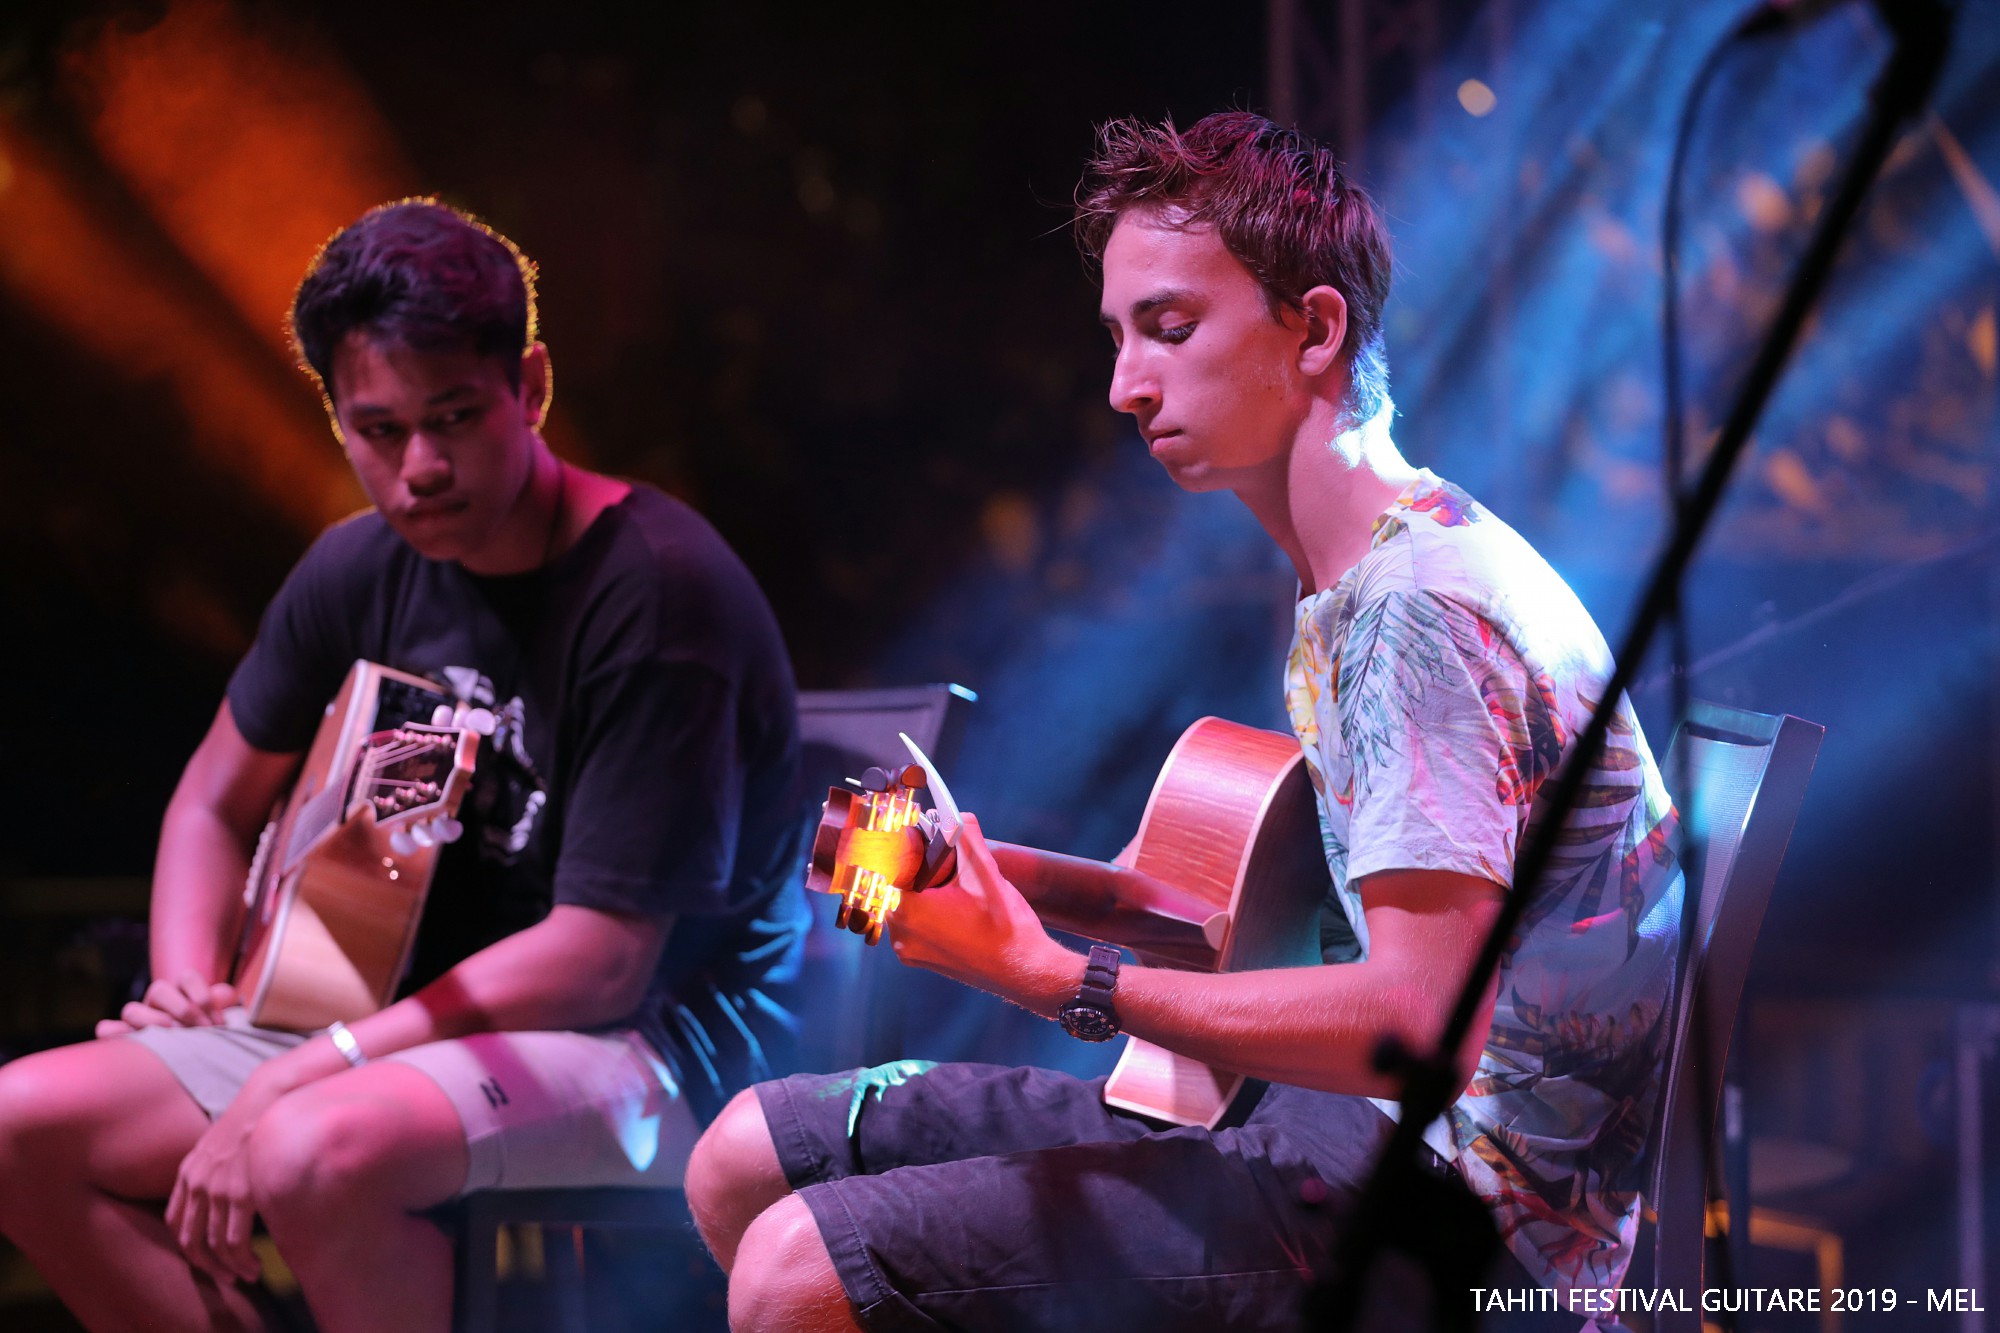 Julian Piro (à droite) le vainqueur de l'édition 2019 (Crédit photo : Tahiti Festival Guitare 2019 – Mel)